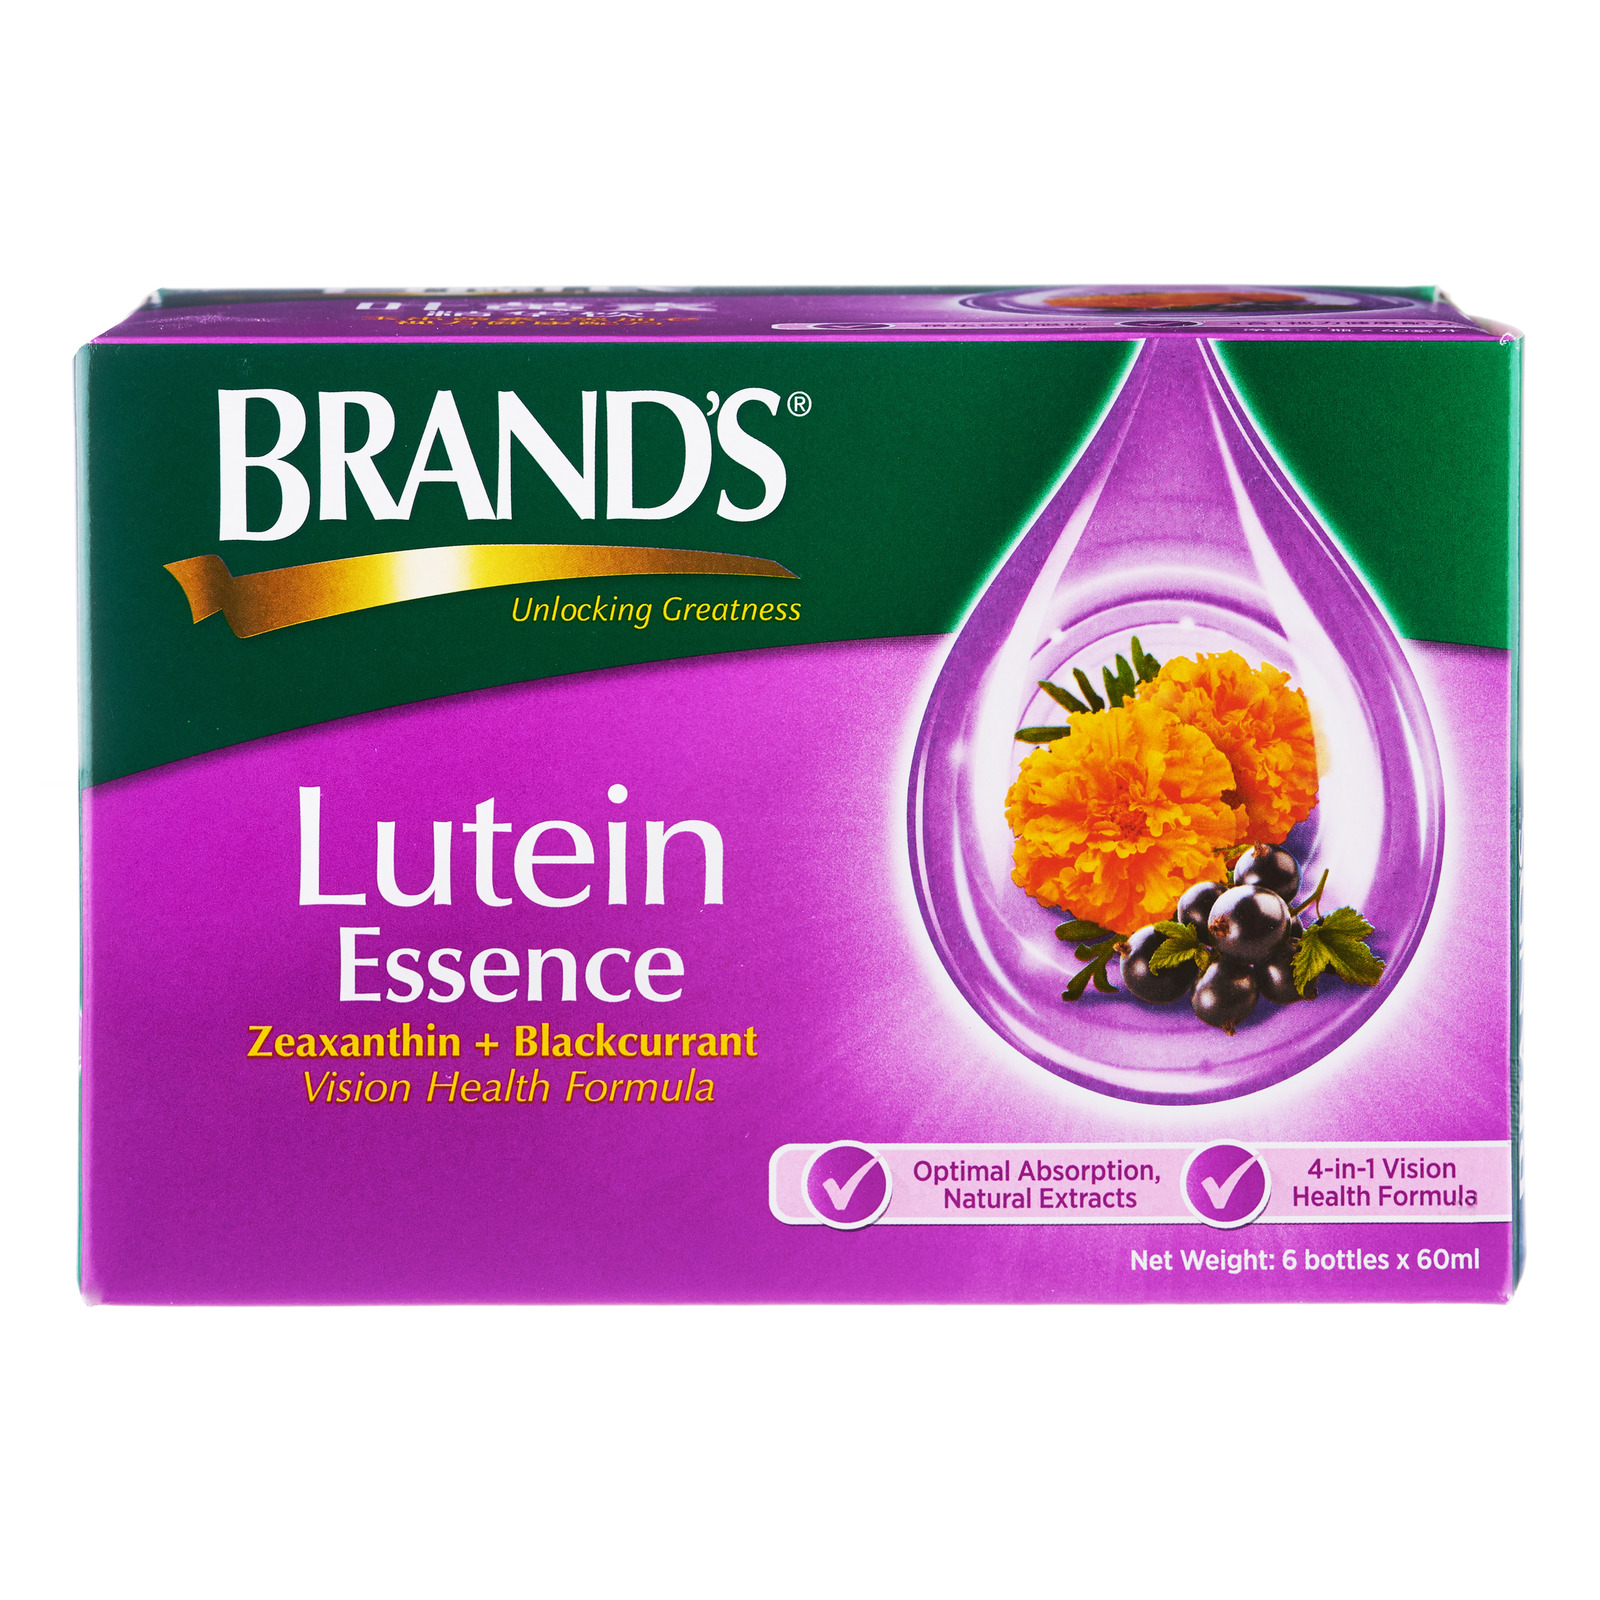 Brand's Lutein Essence - Zeaxanthin + Blackcurrant